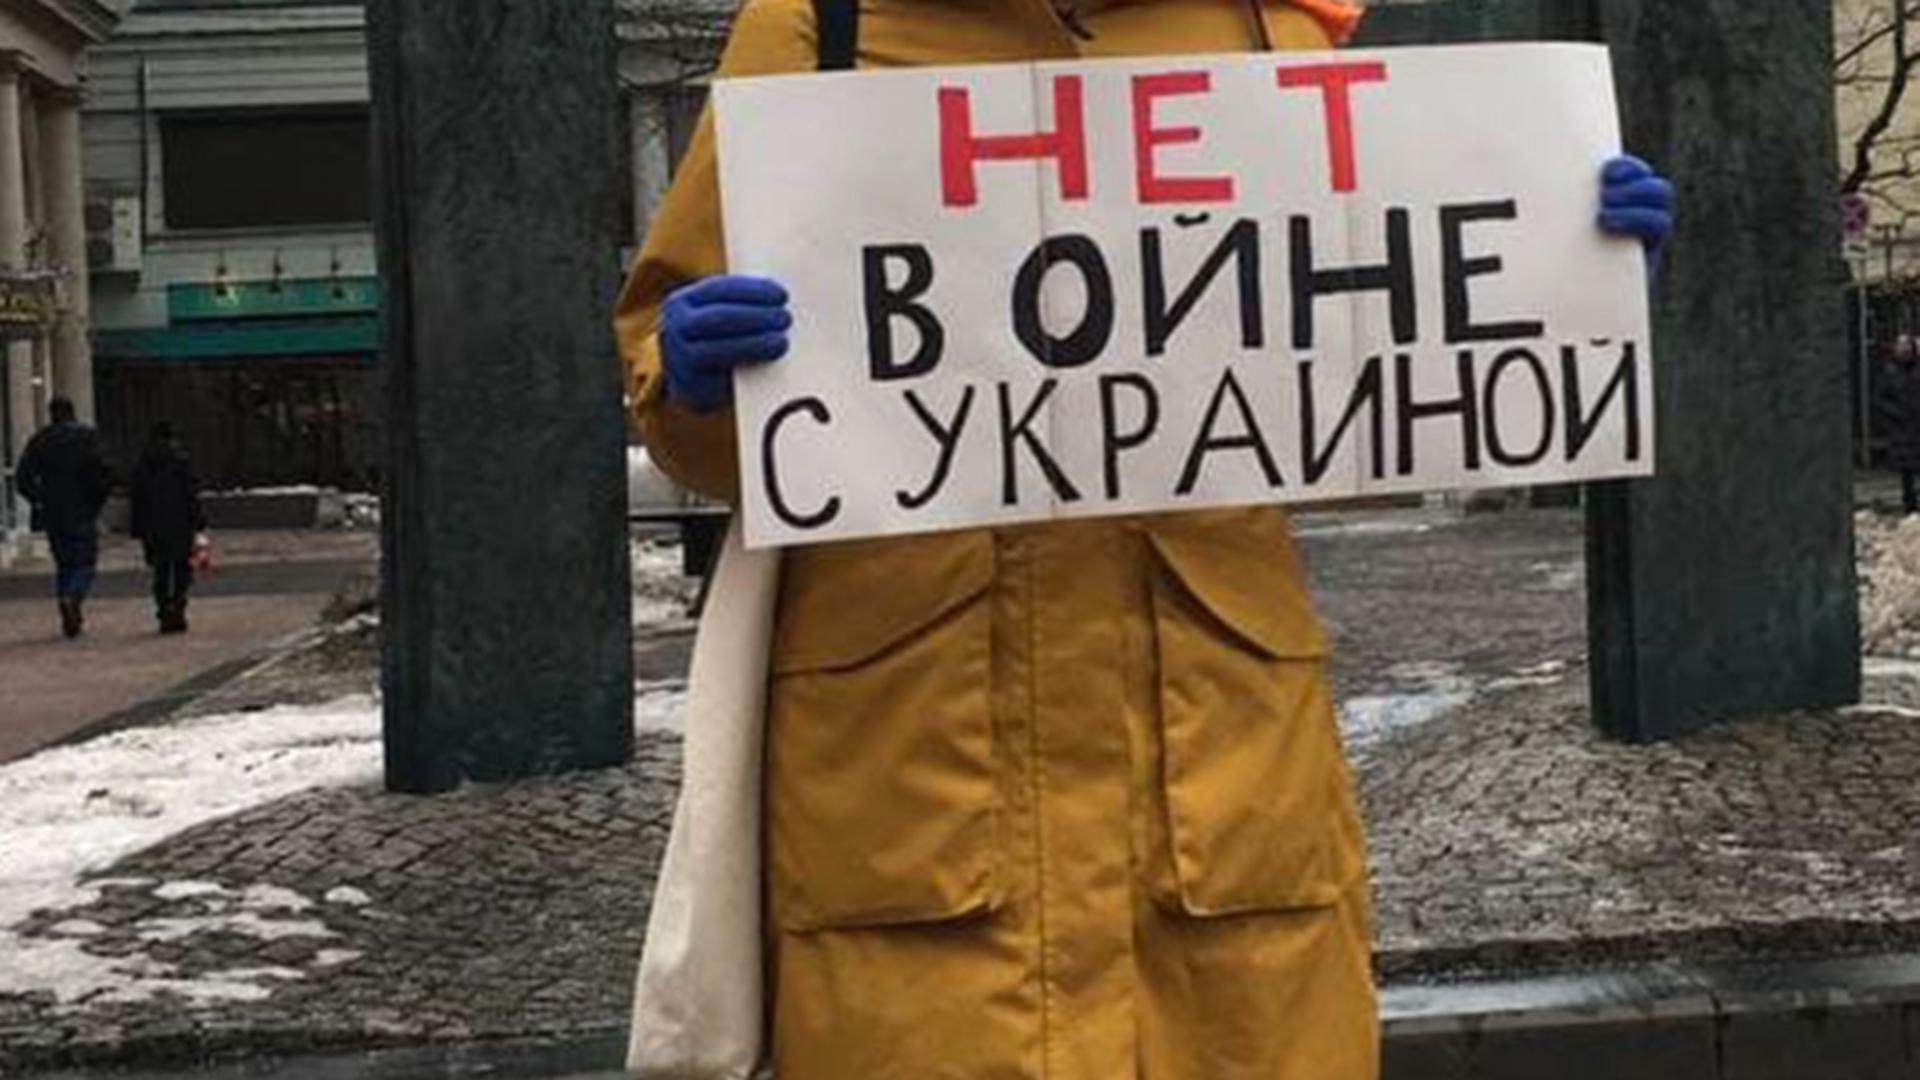 VAL de ură stârnit de Putin - RUȘII, în stradă împotriva războiului din Ucraina! Mesaje emoționante la PROTESTE | VIDEO